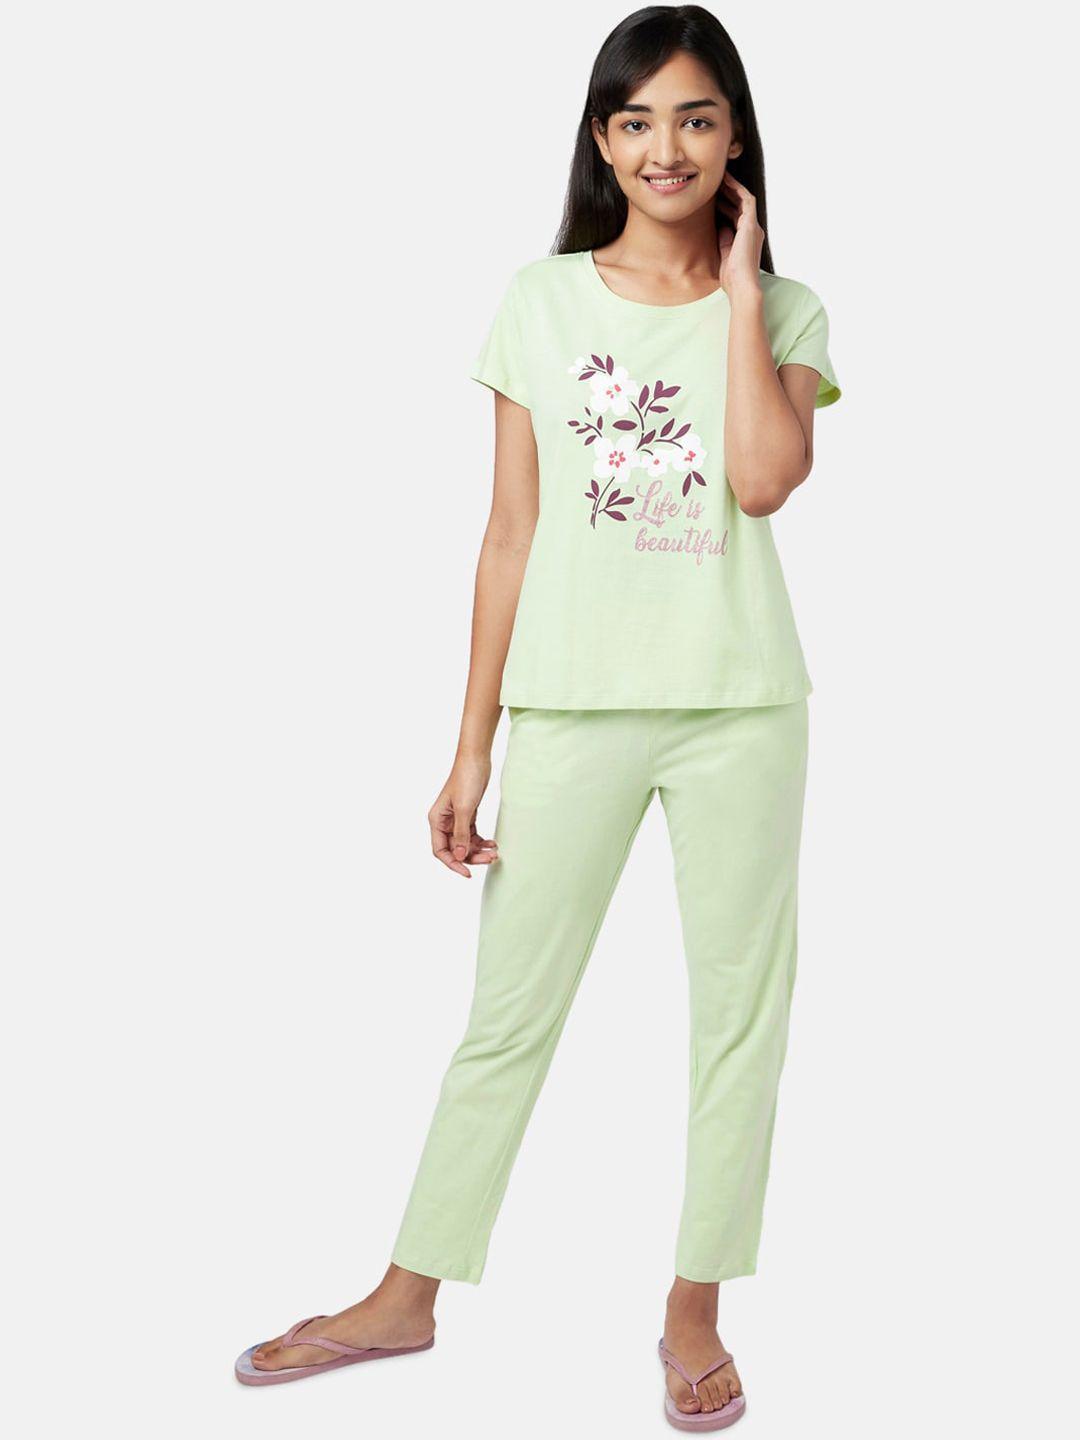 yu by pantaloons women green & white printed night suit